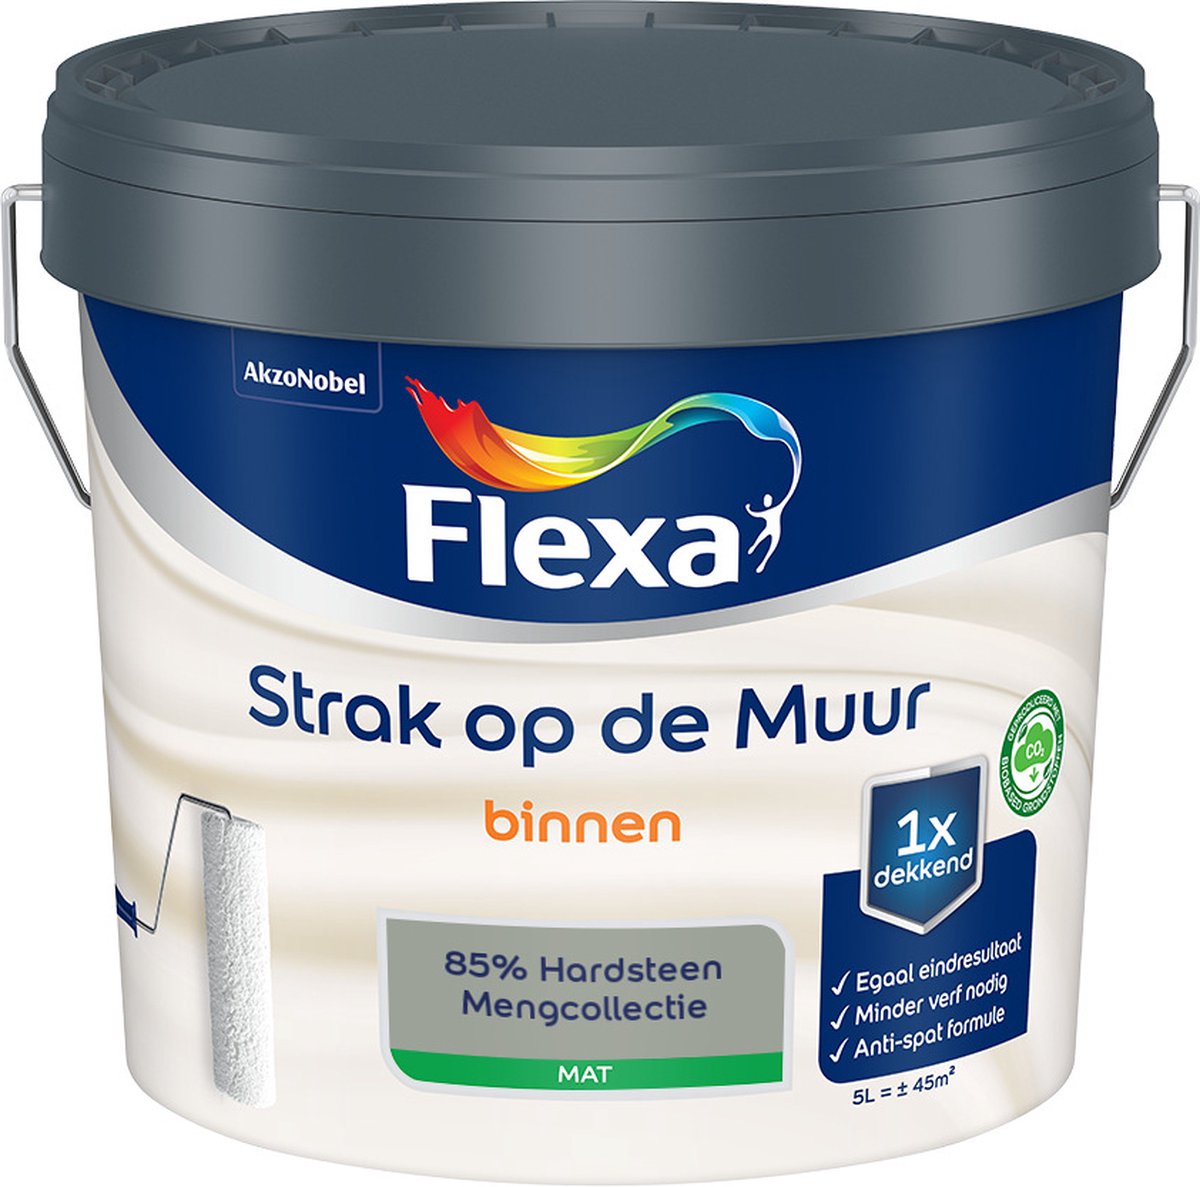 Flexa Strak op de muur - Muurverf - Mengcollectie - 85% Hardsteen - 5 Liter